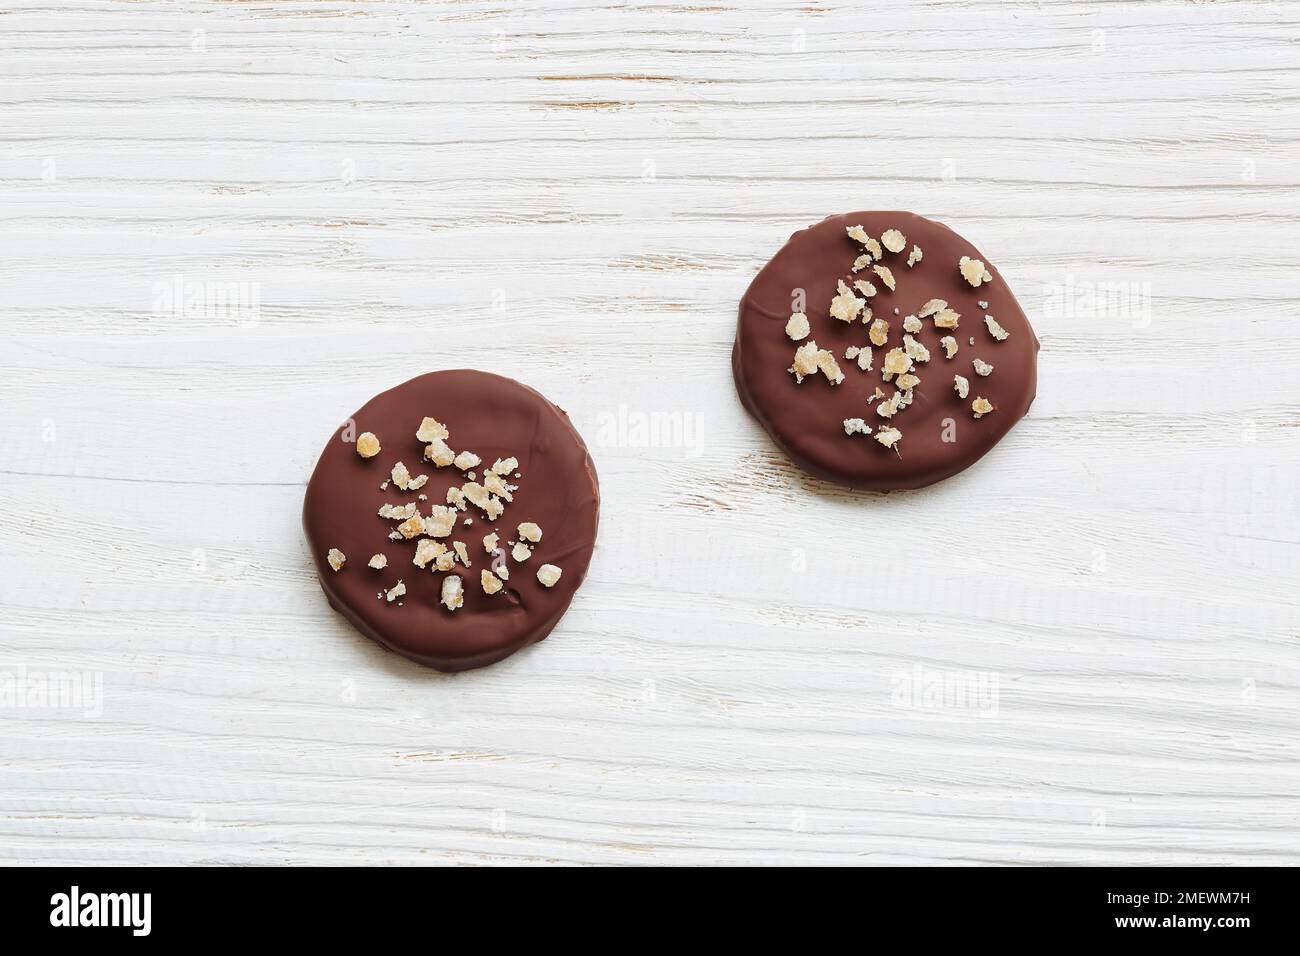 Biscuits au gingembre sablÈ trempés dans du chocolat Banque D'Images